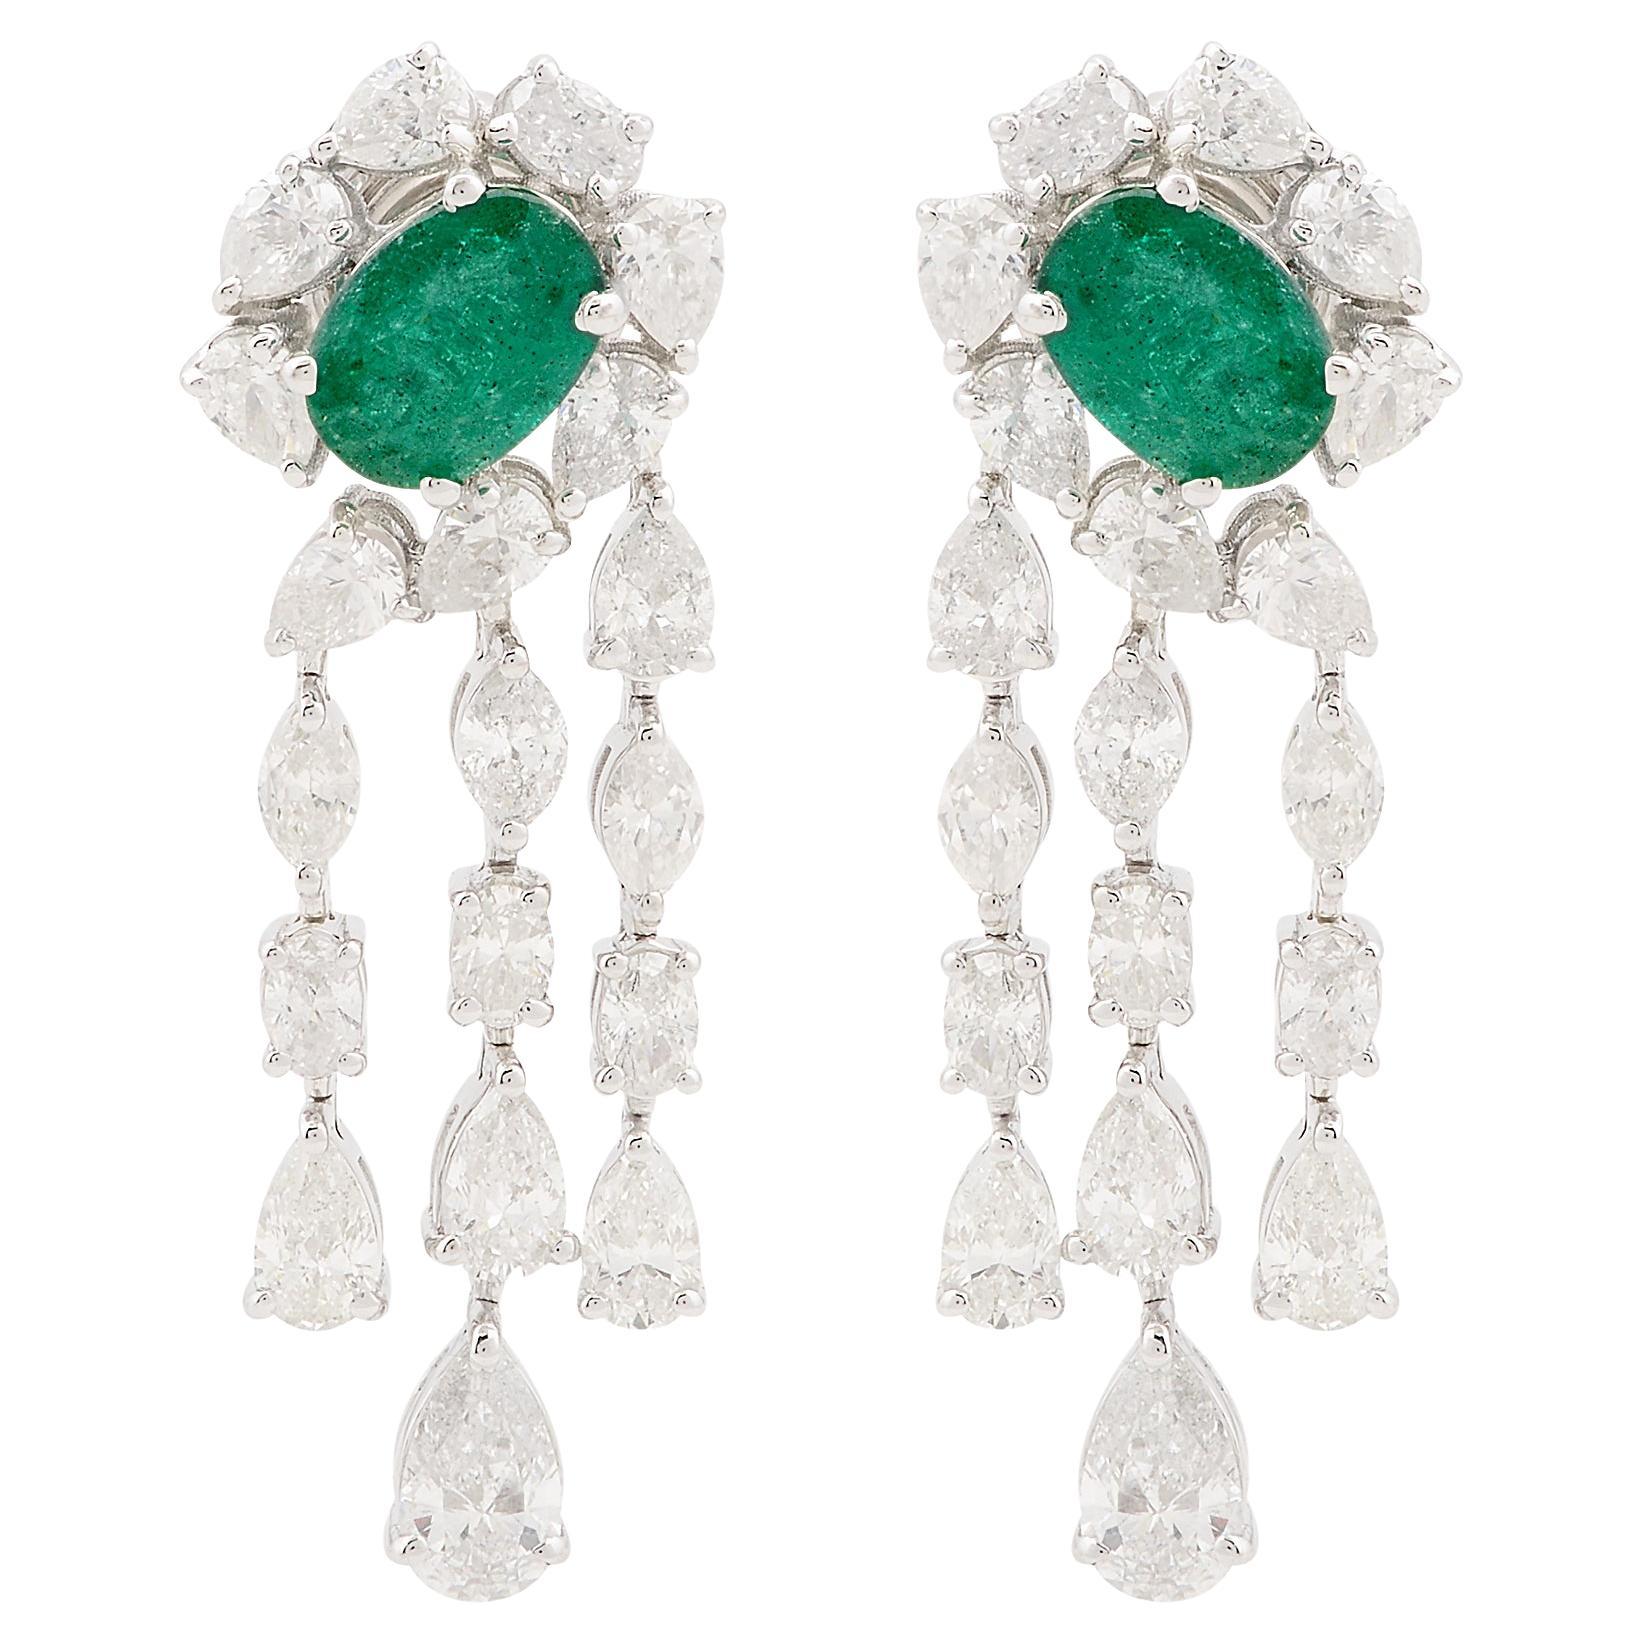 Oval Emerald Gemstone Chandelier Earrings Diamond Solid 18k White Gold Jewelry